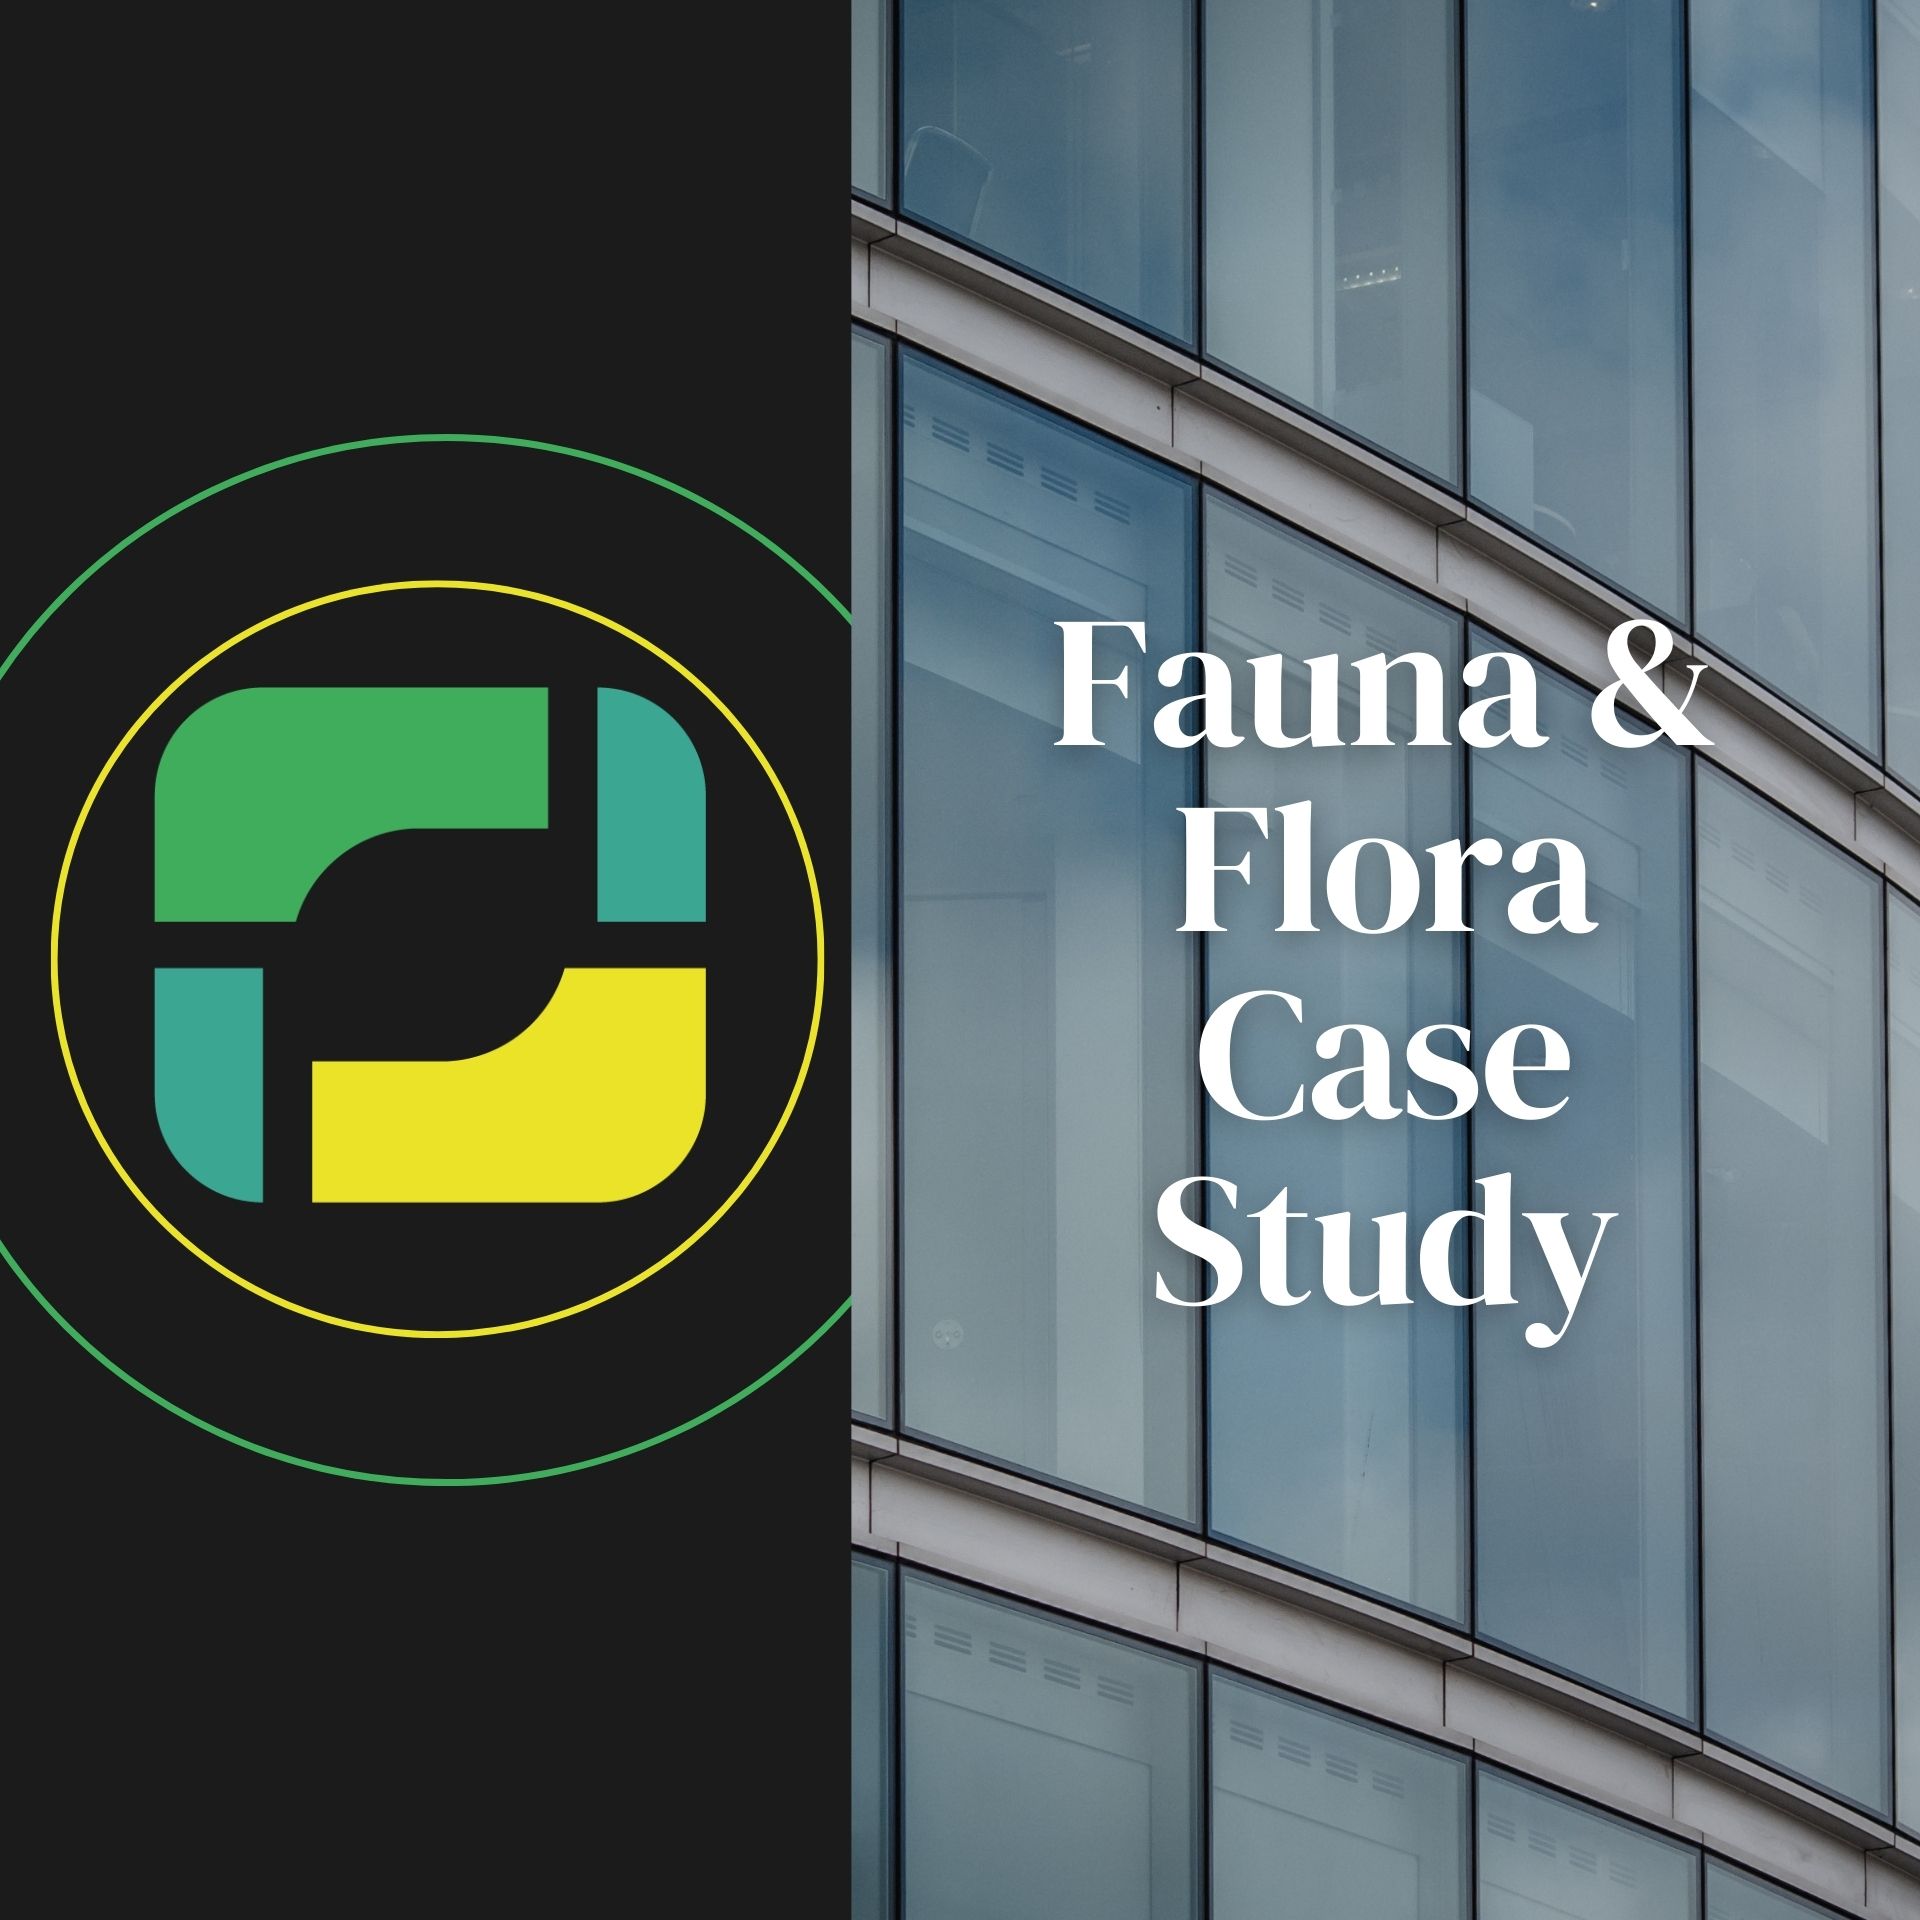 Fauna & Flora Case Study